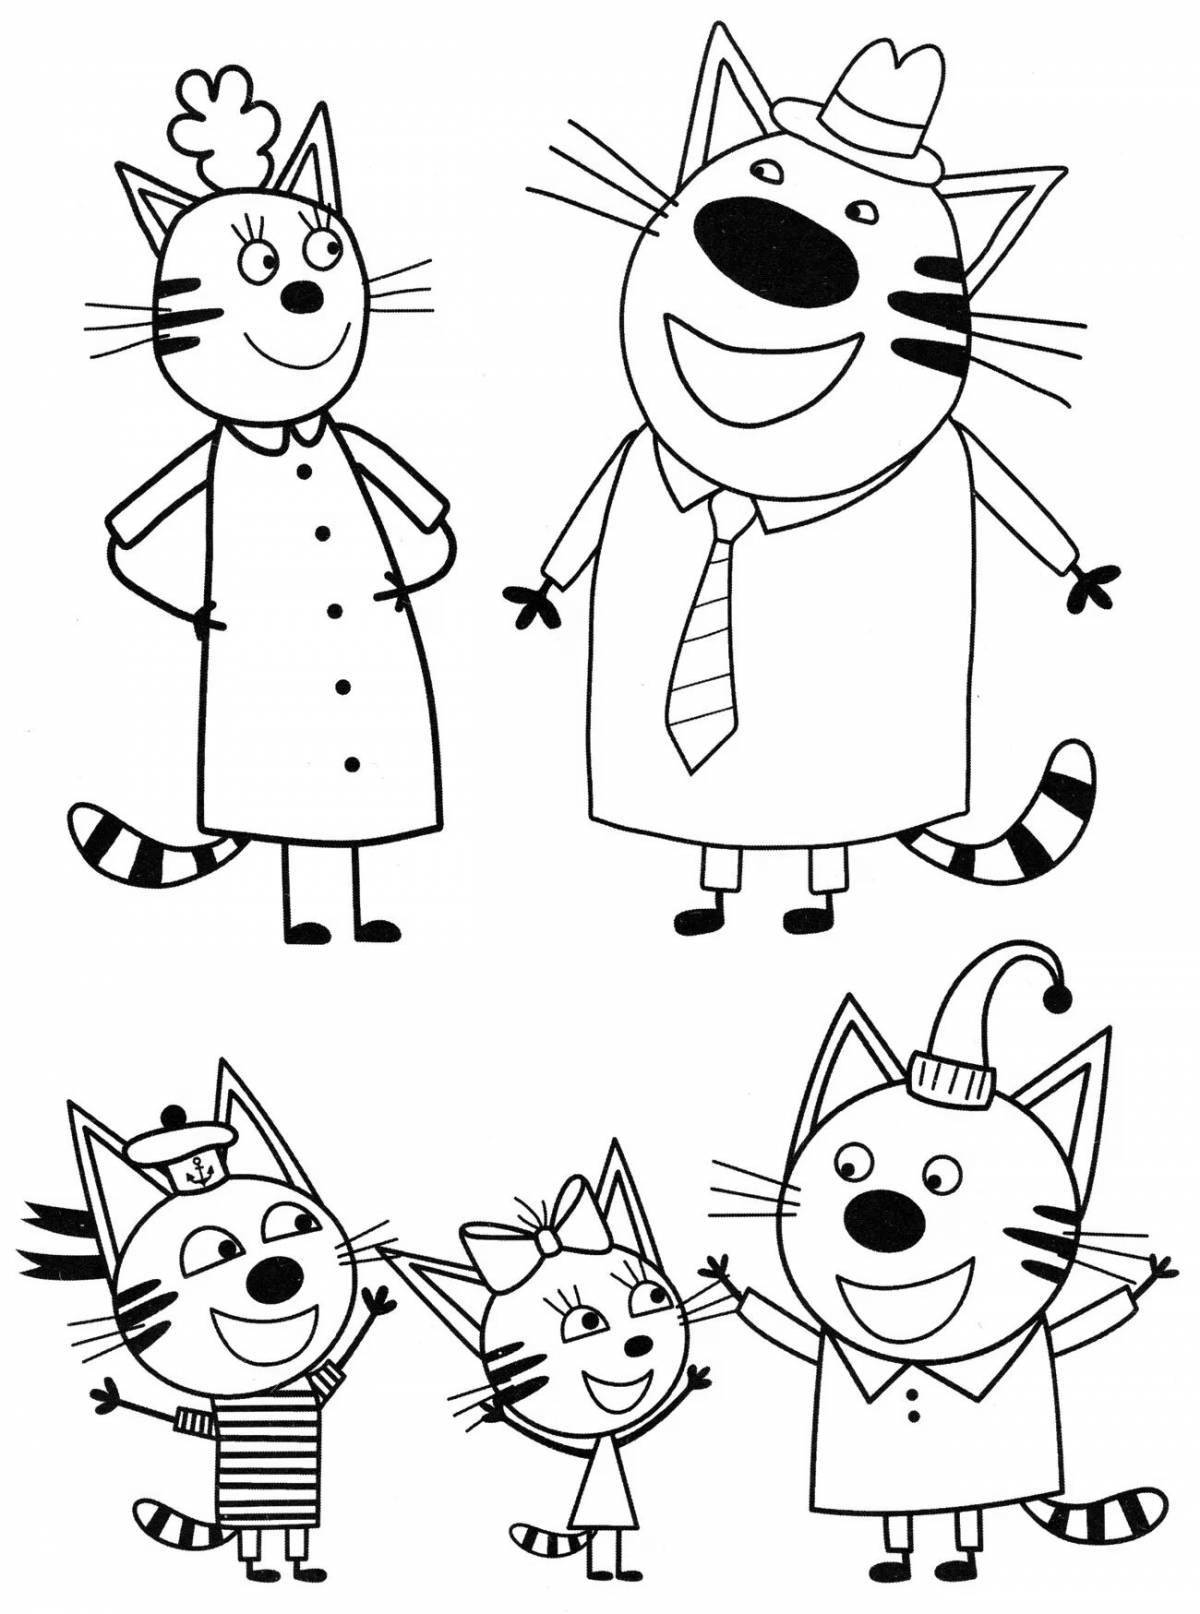 Великолепная семейная раскраска «три кота»